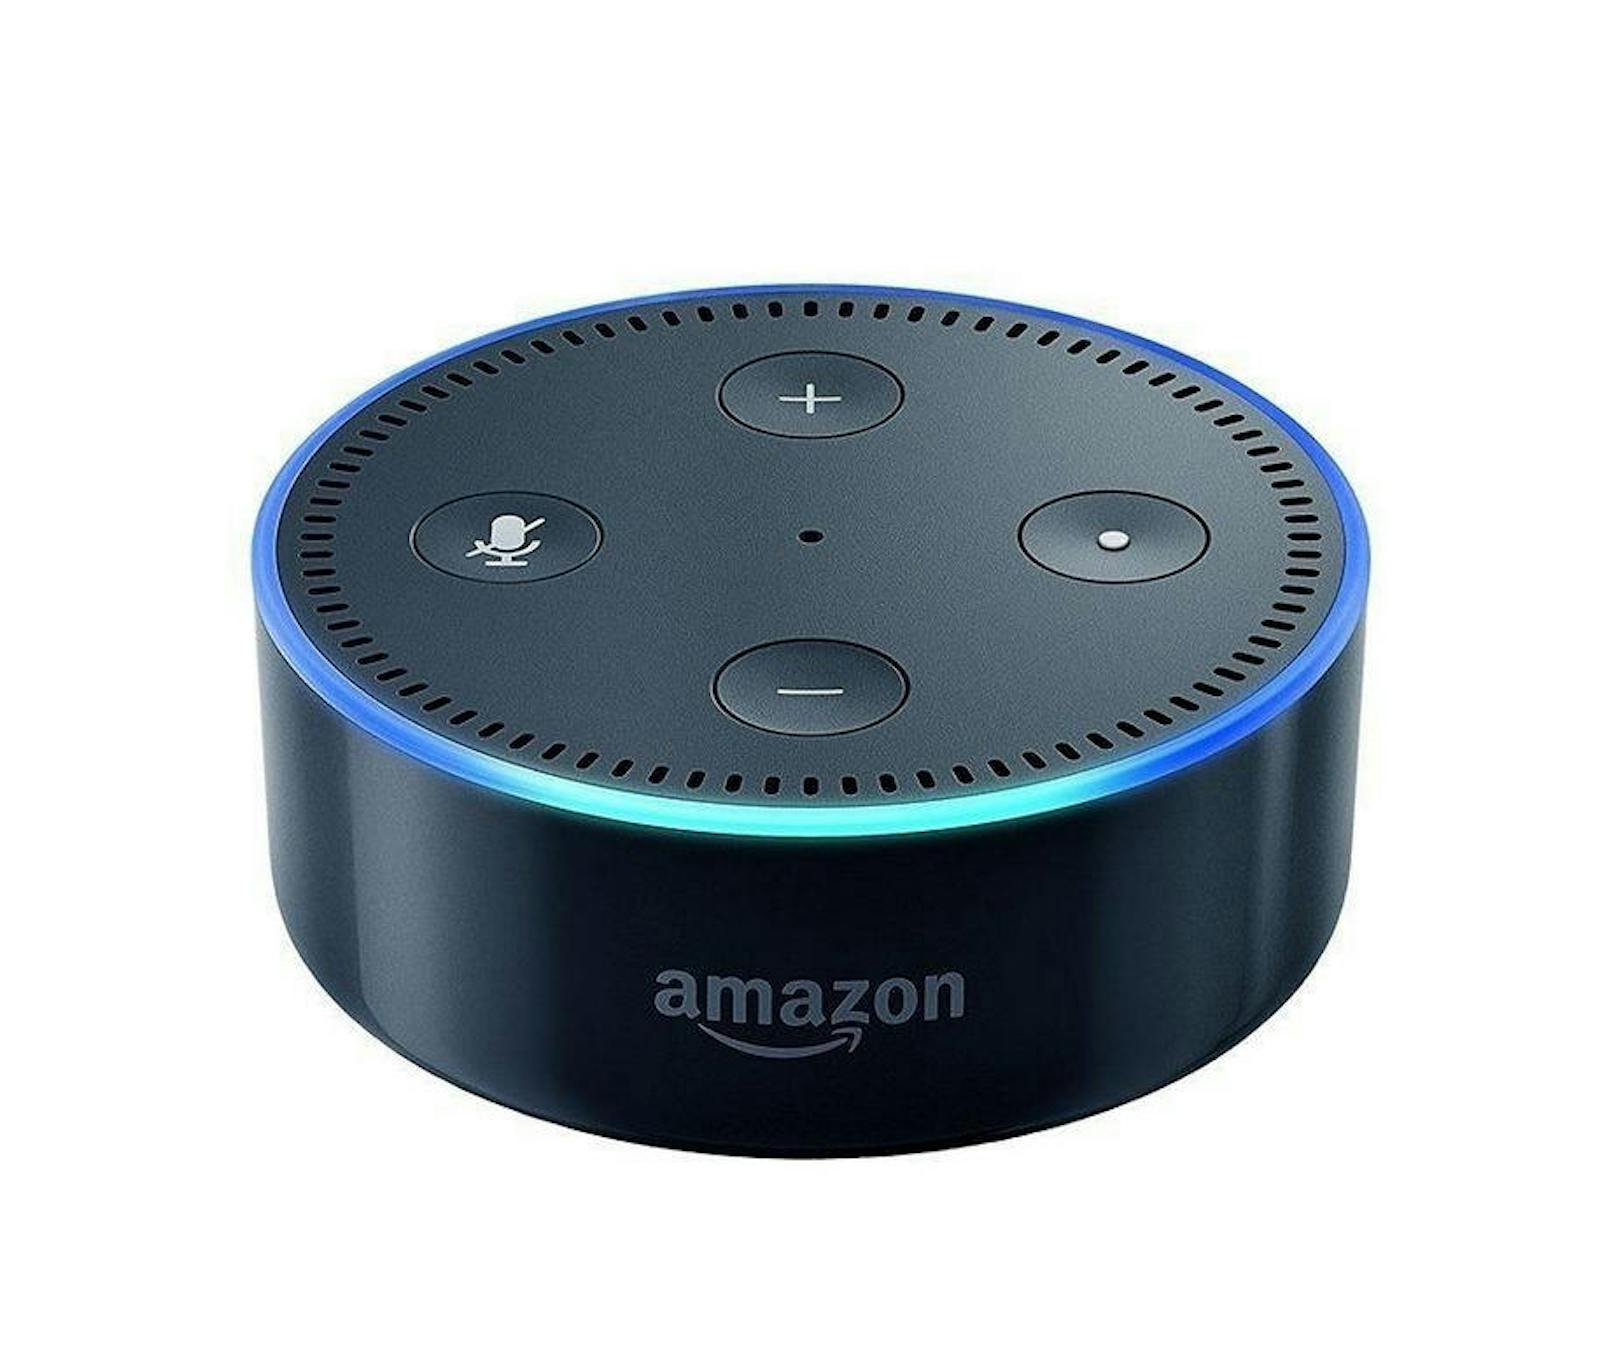 Und dieses Gerät hier ist der Amazon Echo. Alexa, die Stimme hinter dem Gerät, ist eine Art Siri für Ihr Haus: Sie kann googeln, beantwortet Fragen, erstellt Einkaufslisten und Ähnliches. Zusätzlich lässt sich Alexa mit vielen anderen Apps verbinden - so könnten Sie zum Beispiel Alexa sagen, sie solle den Wasserkocher einschalten. Ist der mit einer App verbunden, dann kann sie das auch.